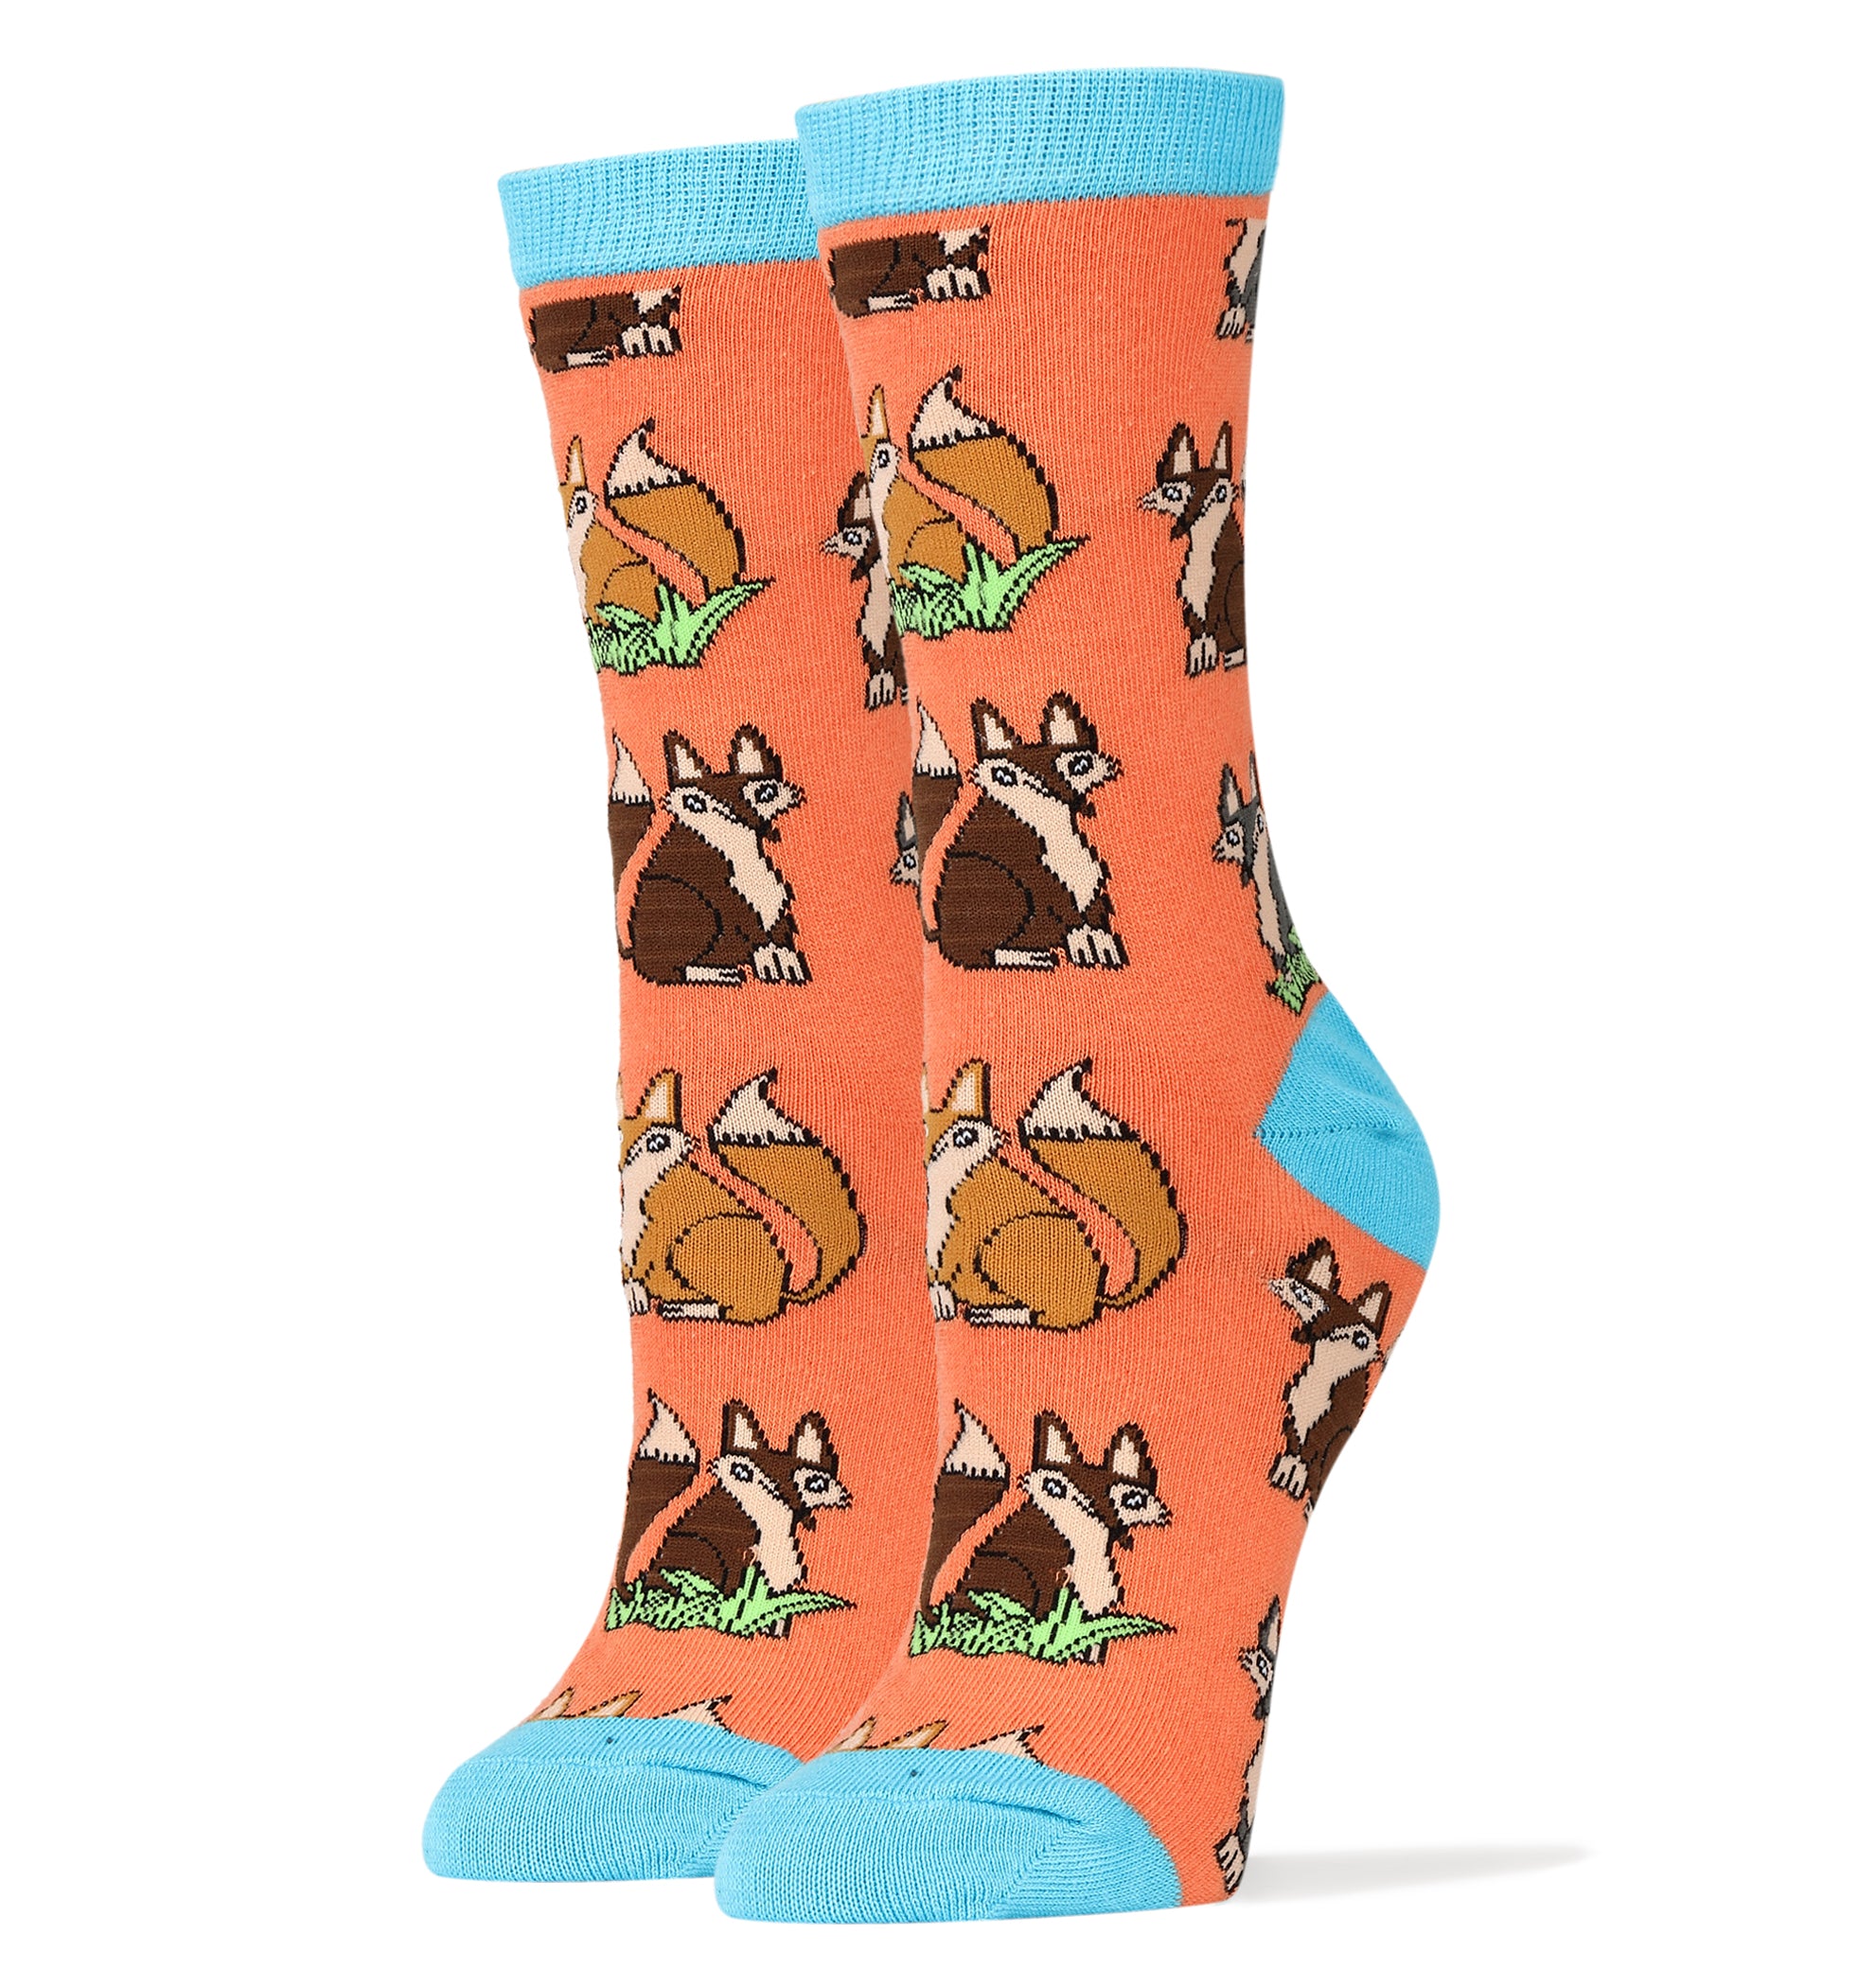 Foxtrot Socks | Novelty Crew Socks For Women